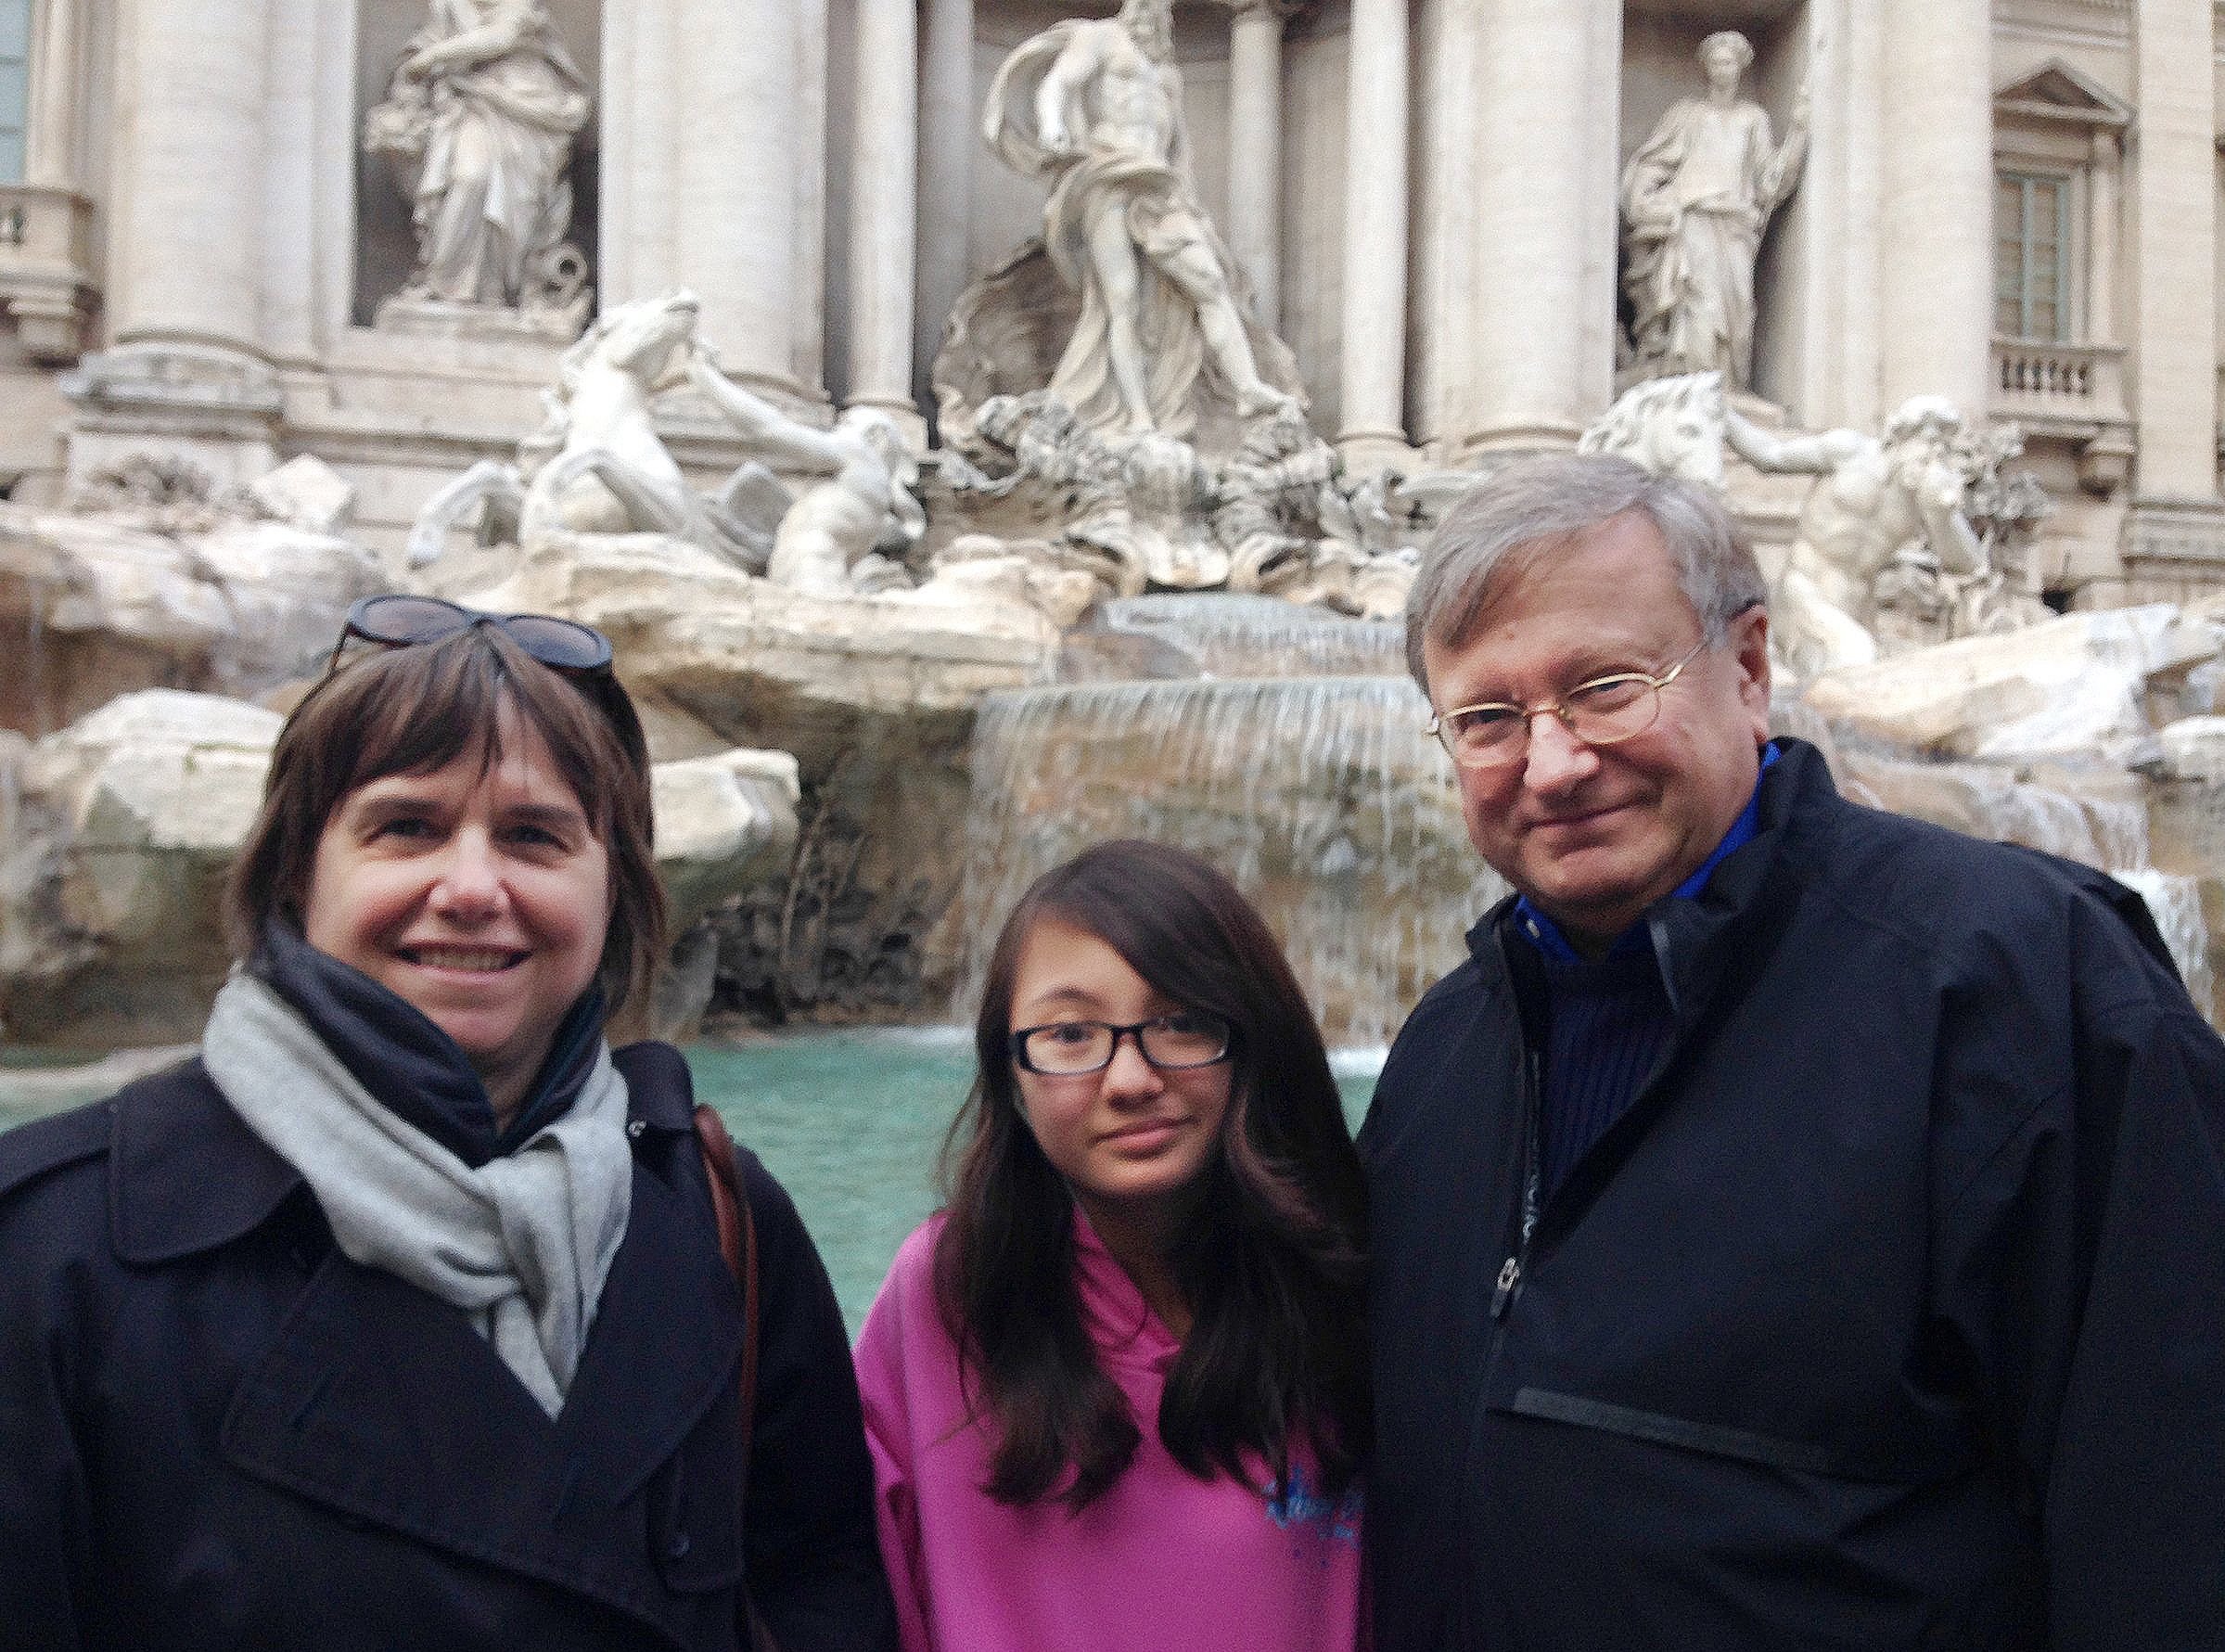  Family in Rome (2013) 